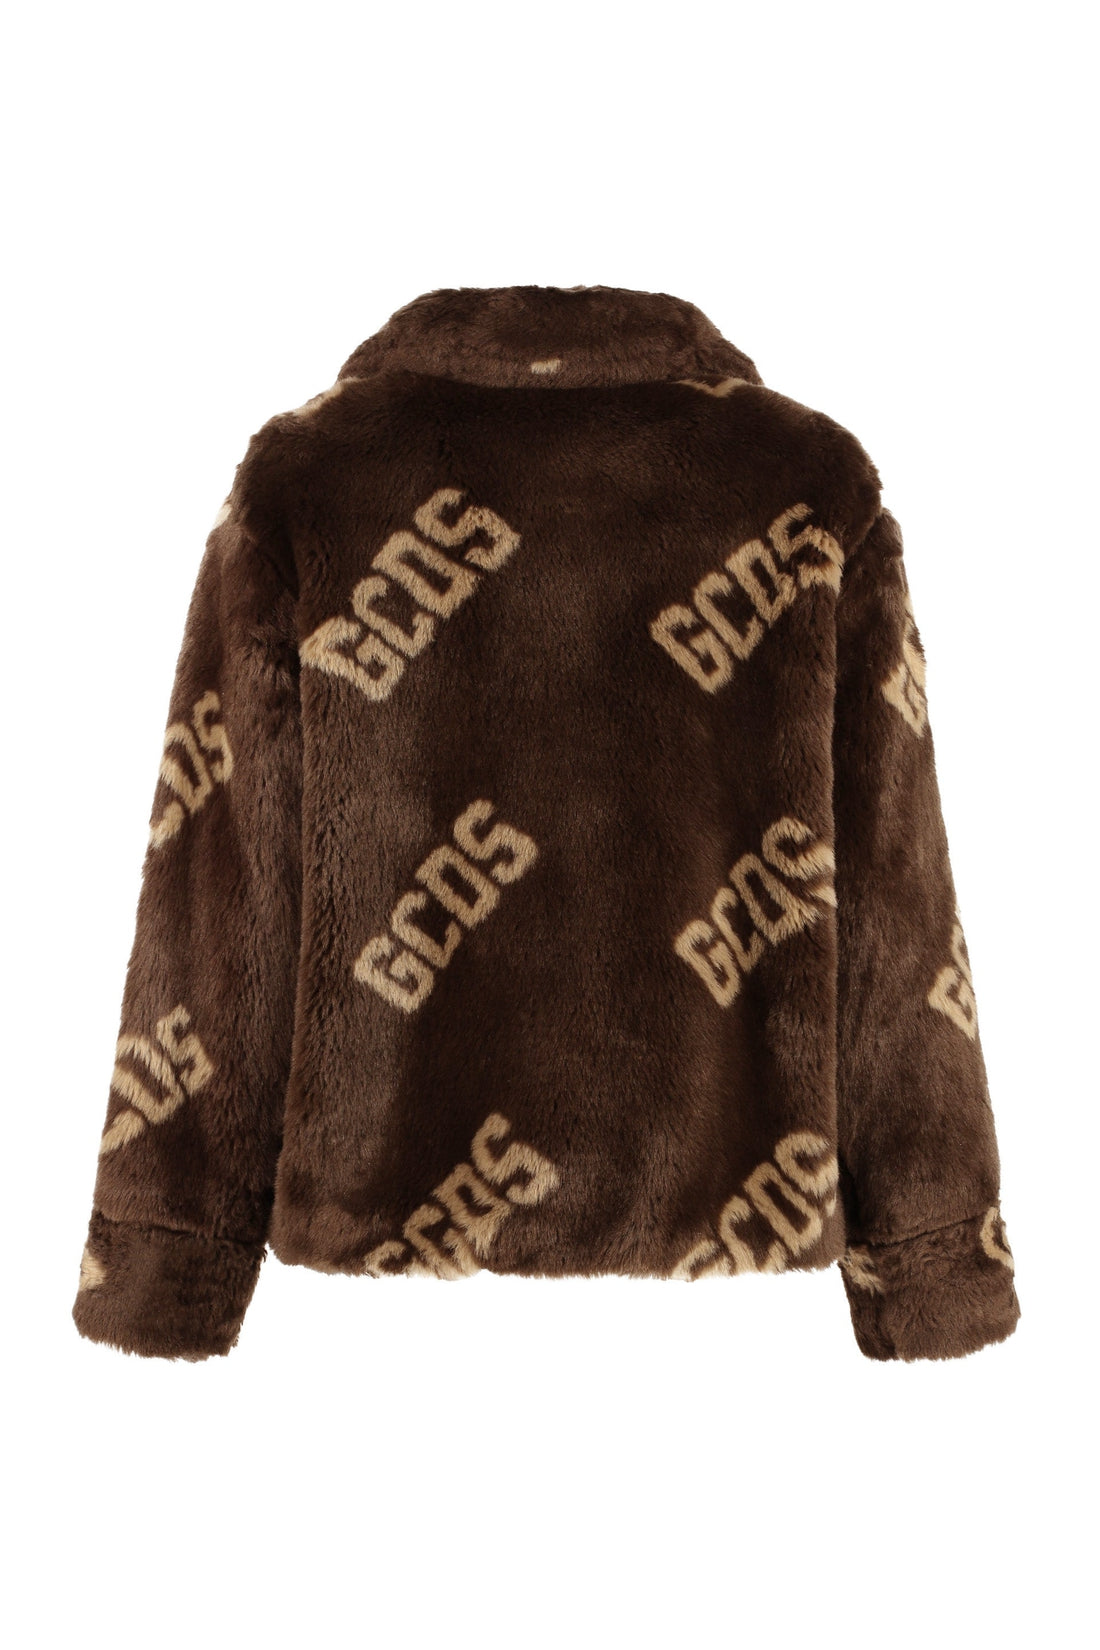 GCDS-OUTLET-SALE-Faux fur coat-ARCHIVIST